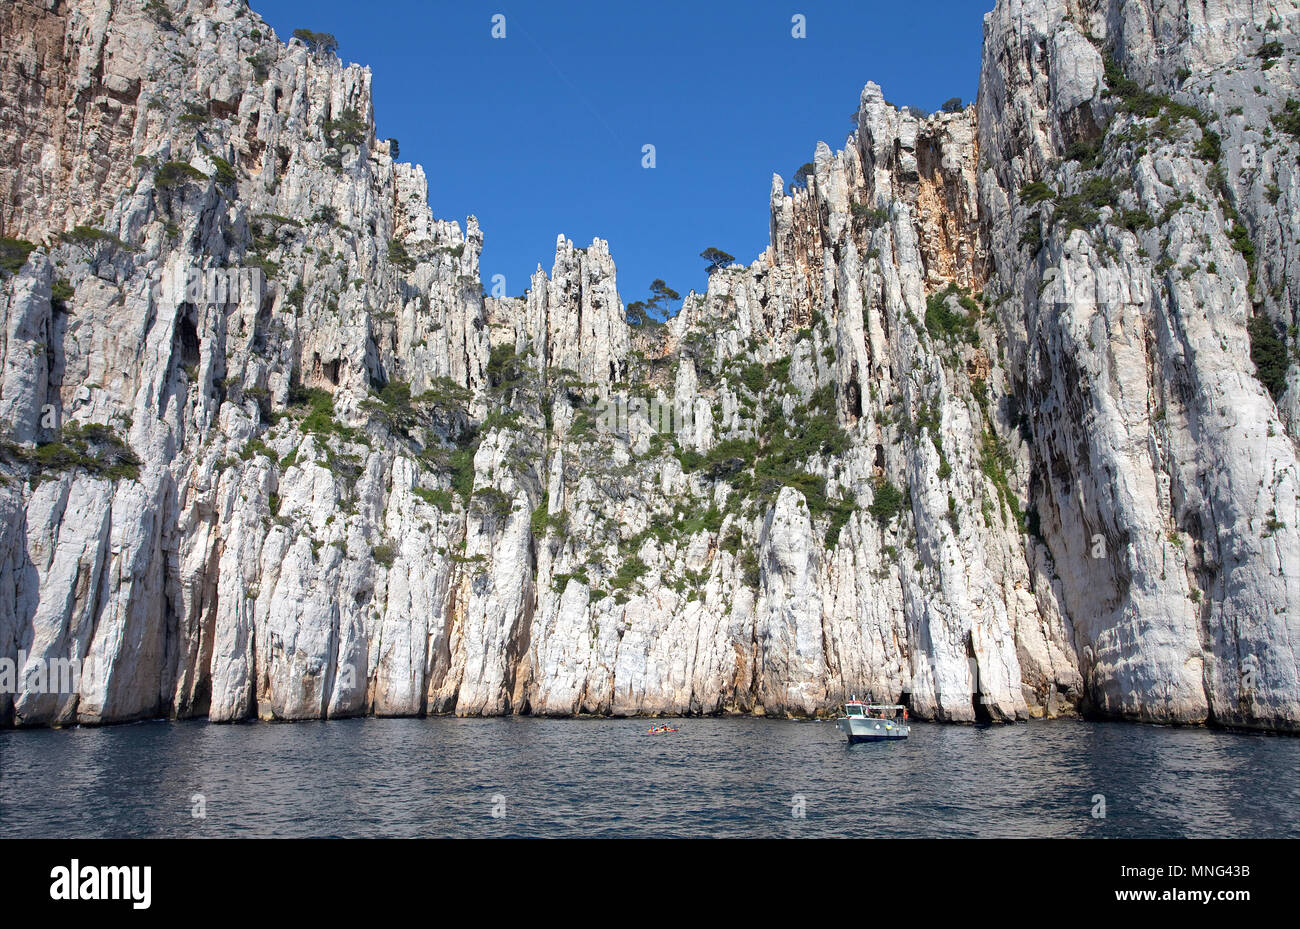 Calanque Oule, eindrucksvollen Kalkfelsen an der Calanques, Bouches-du-Rhône, Côte d'Azur, Südfrankreich, Frankreich, Europa Stockfoto